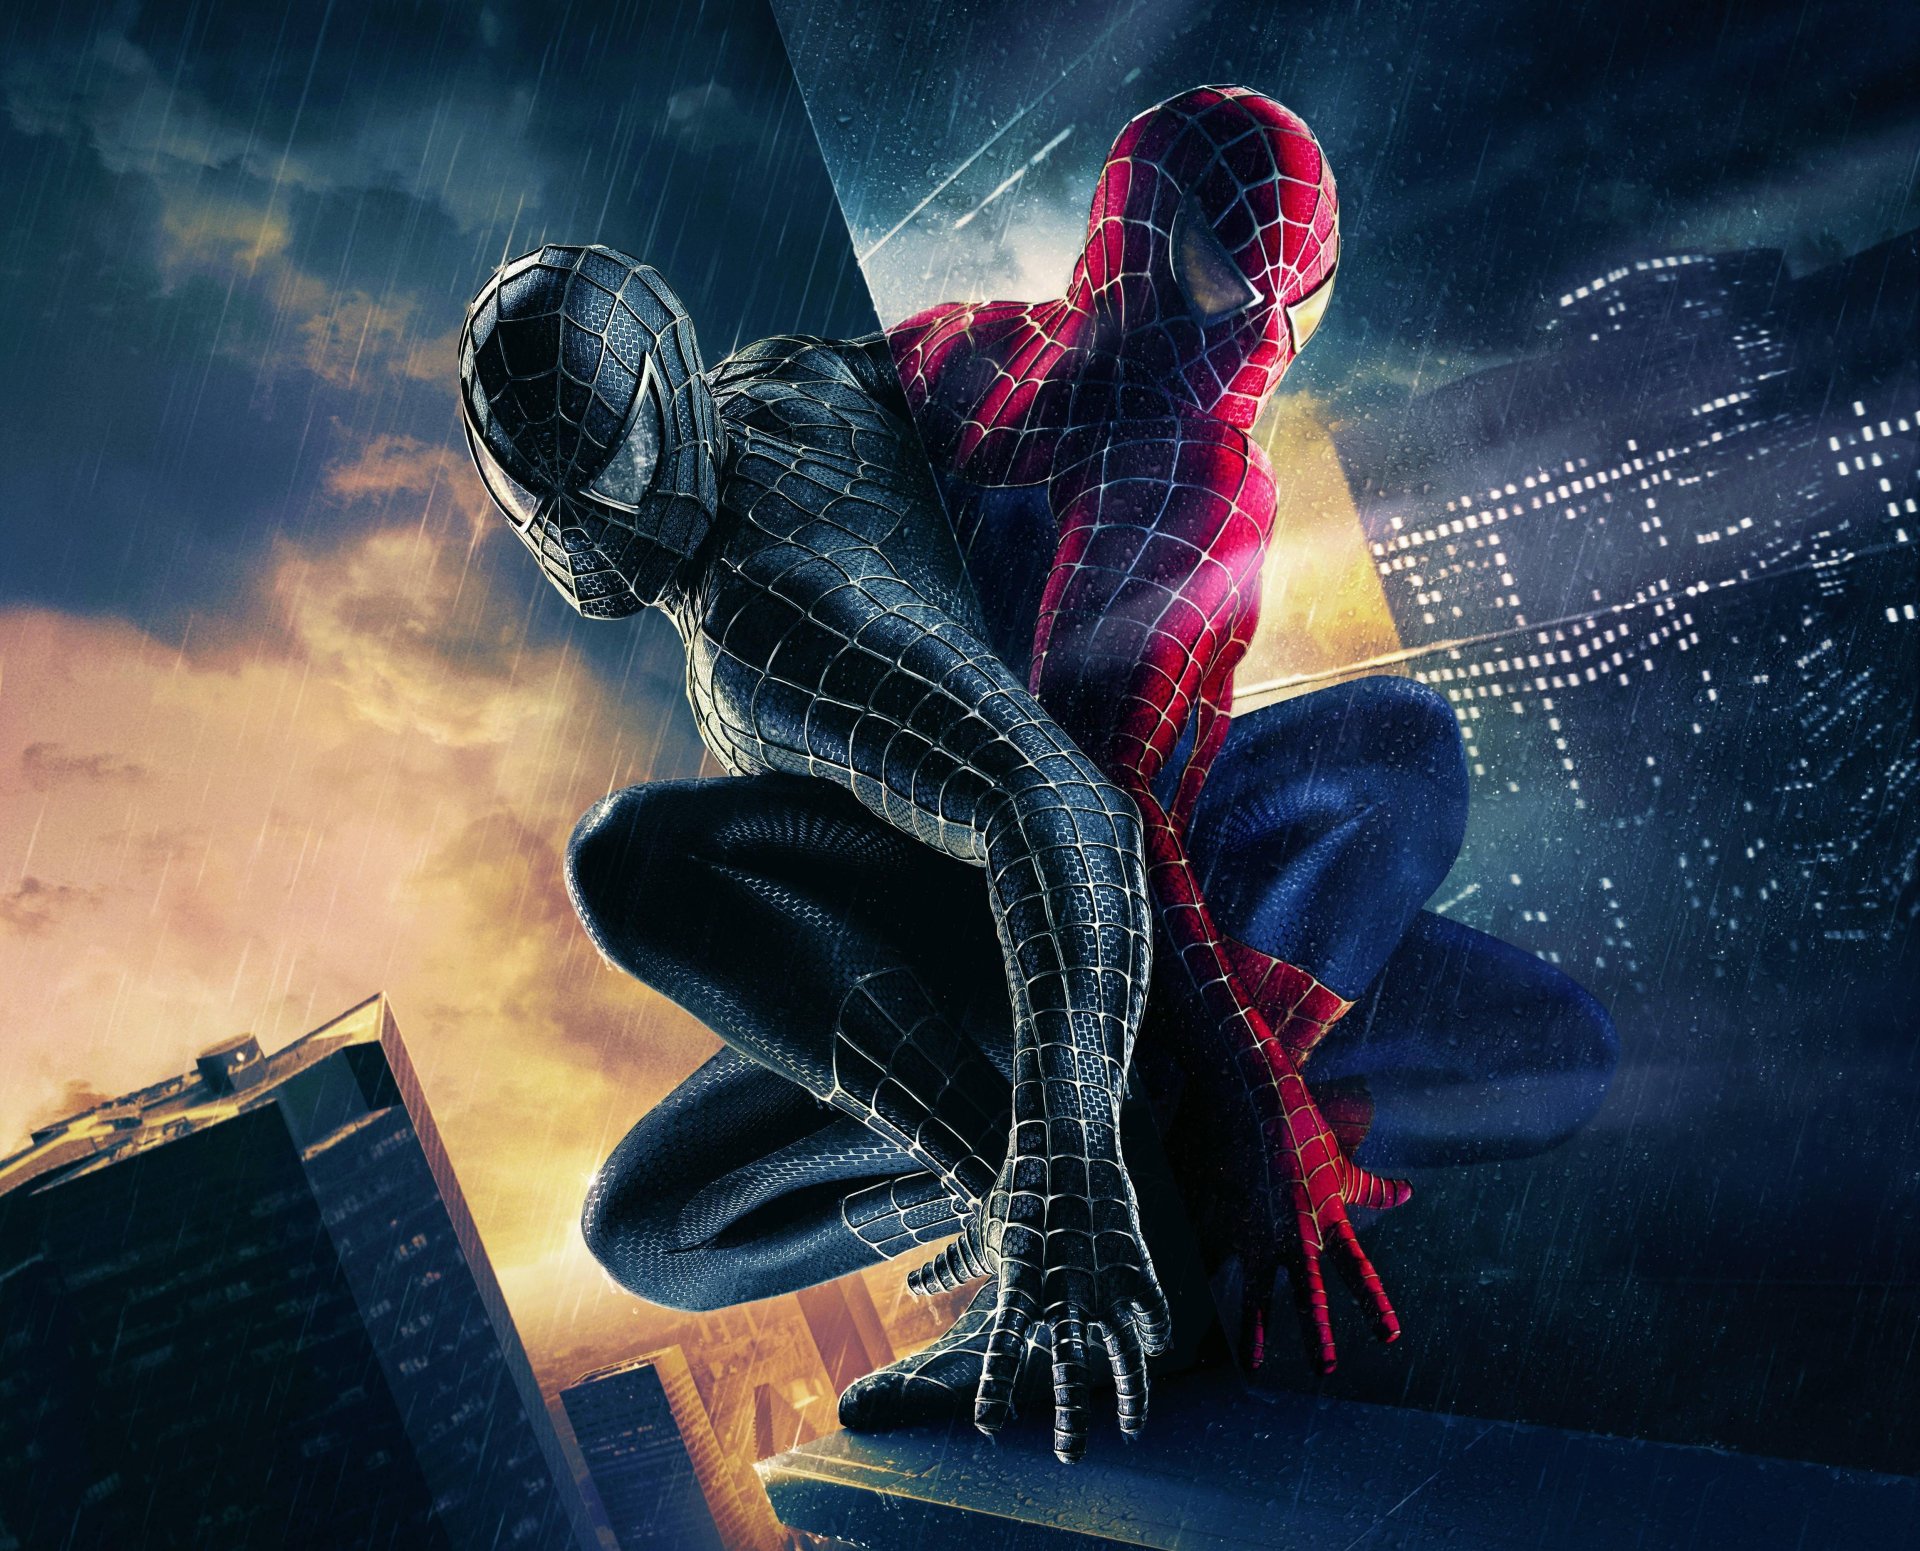 Wallpaper Hd Spiderman 3 - KibrisPDR